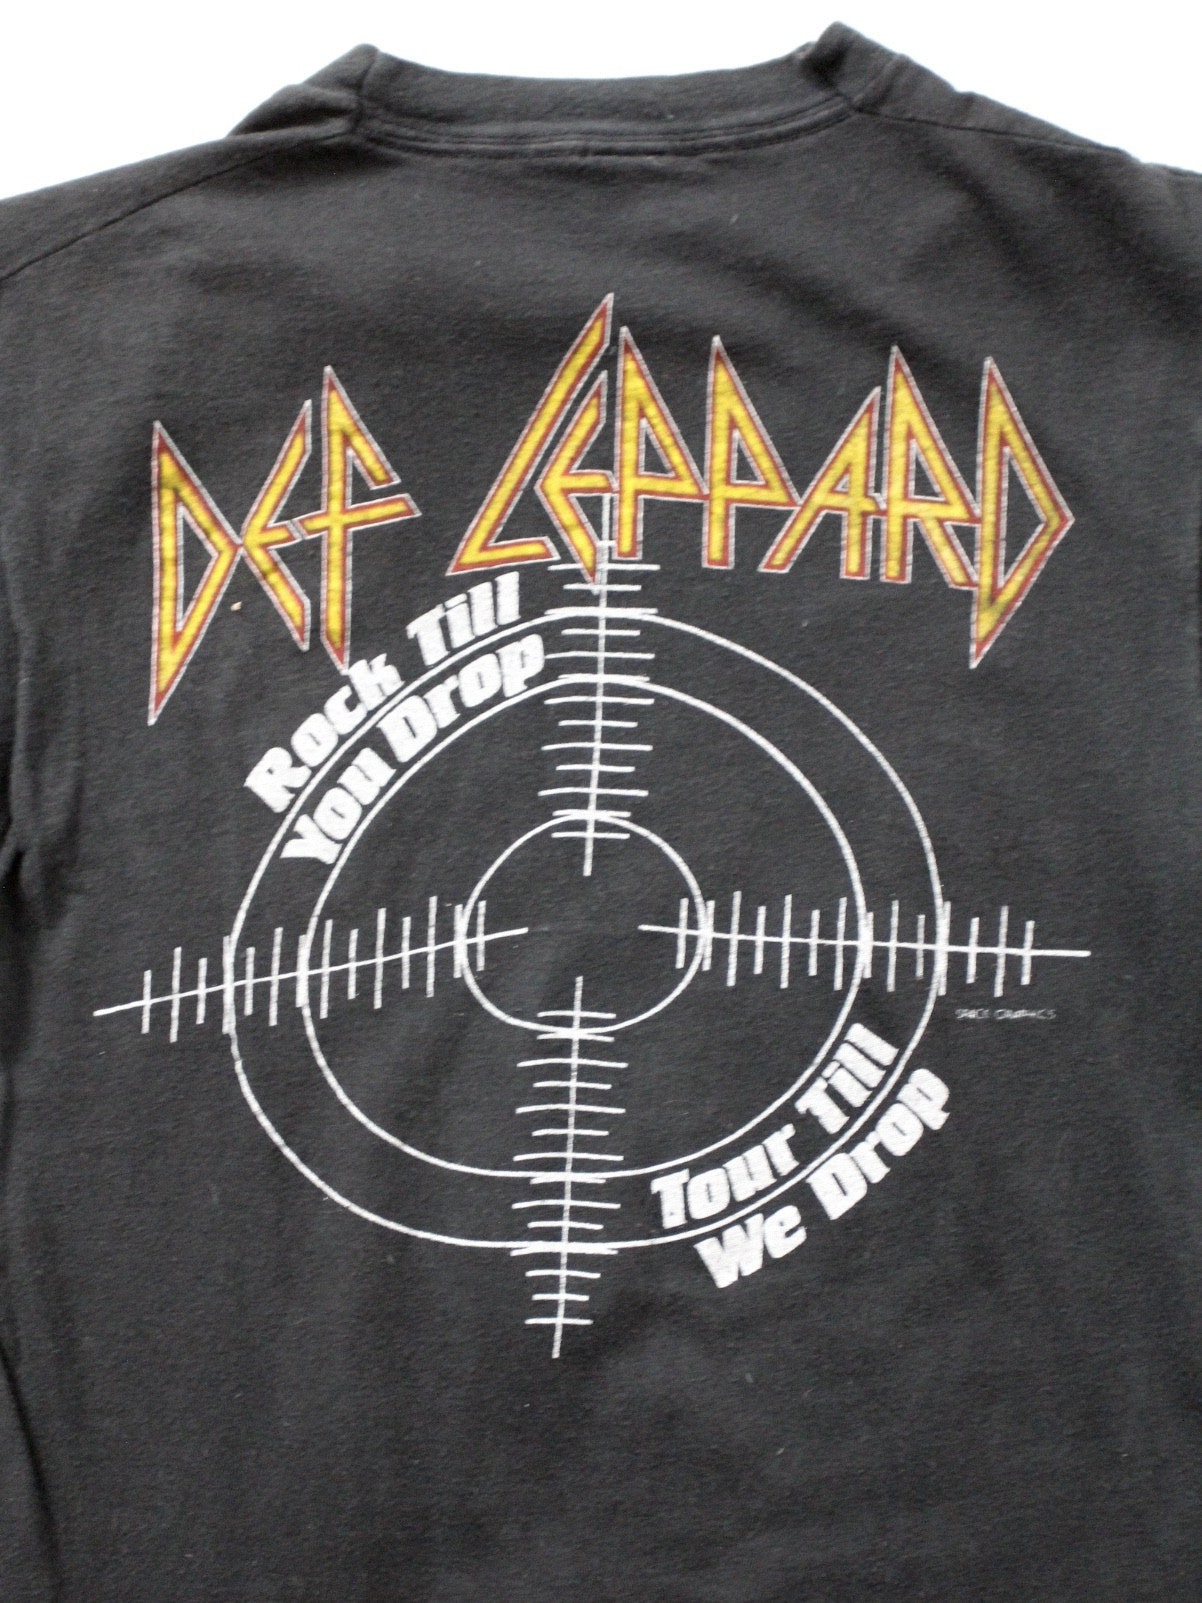 Def t-shirt, 1983 Pyromania tour 86